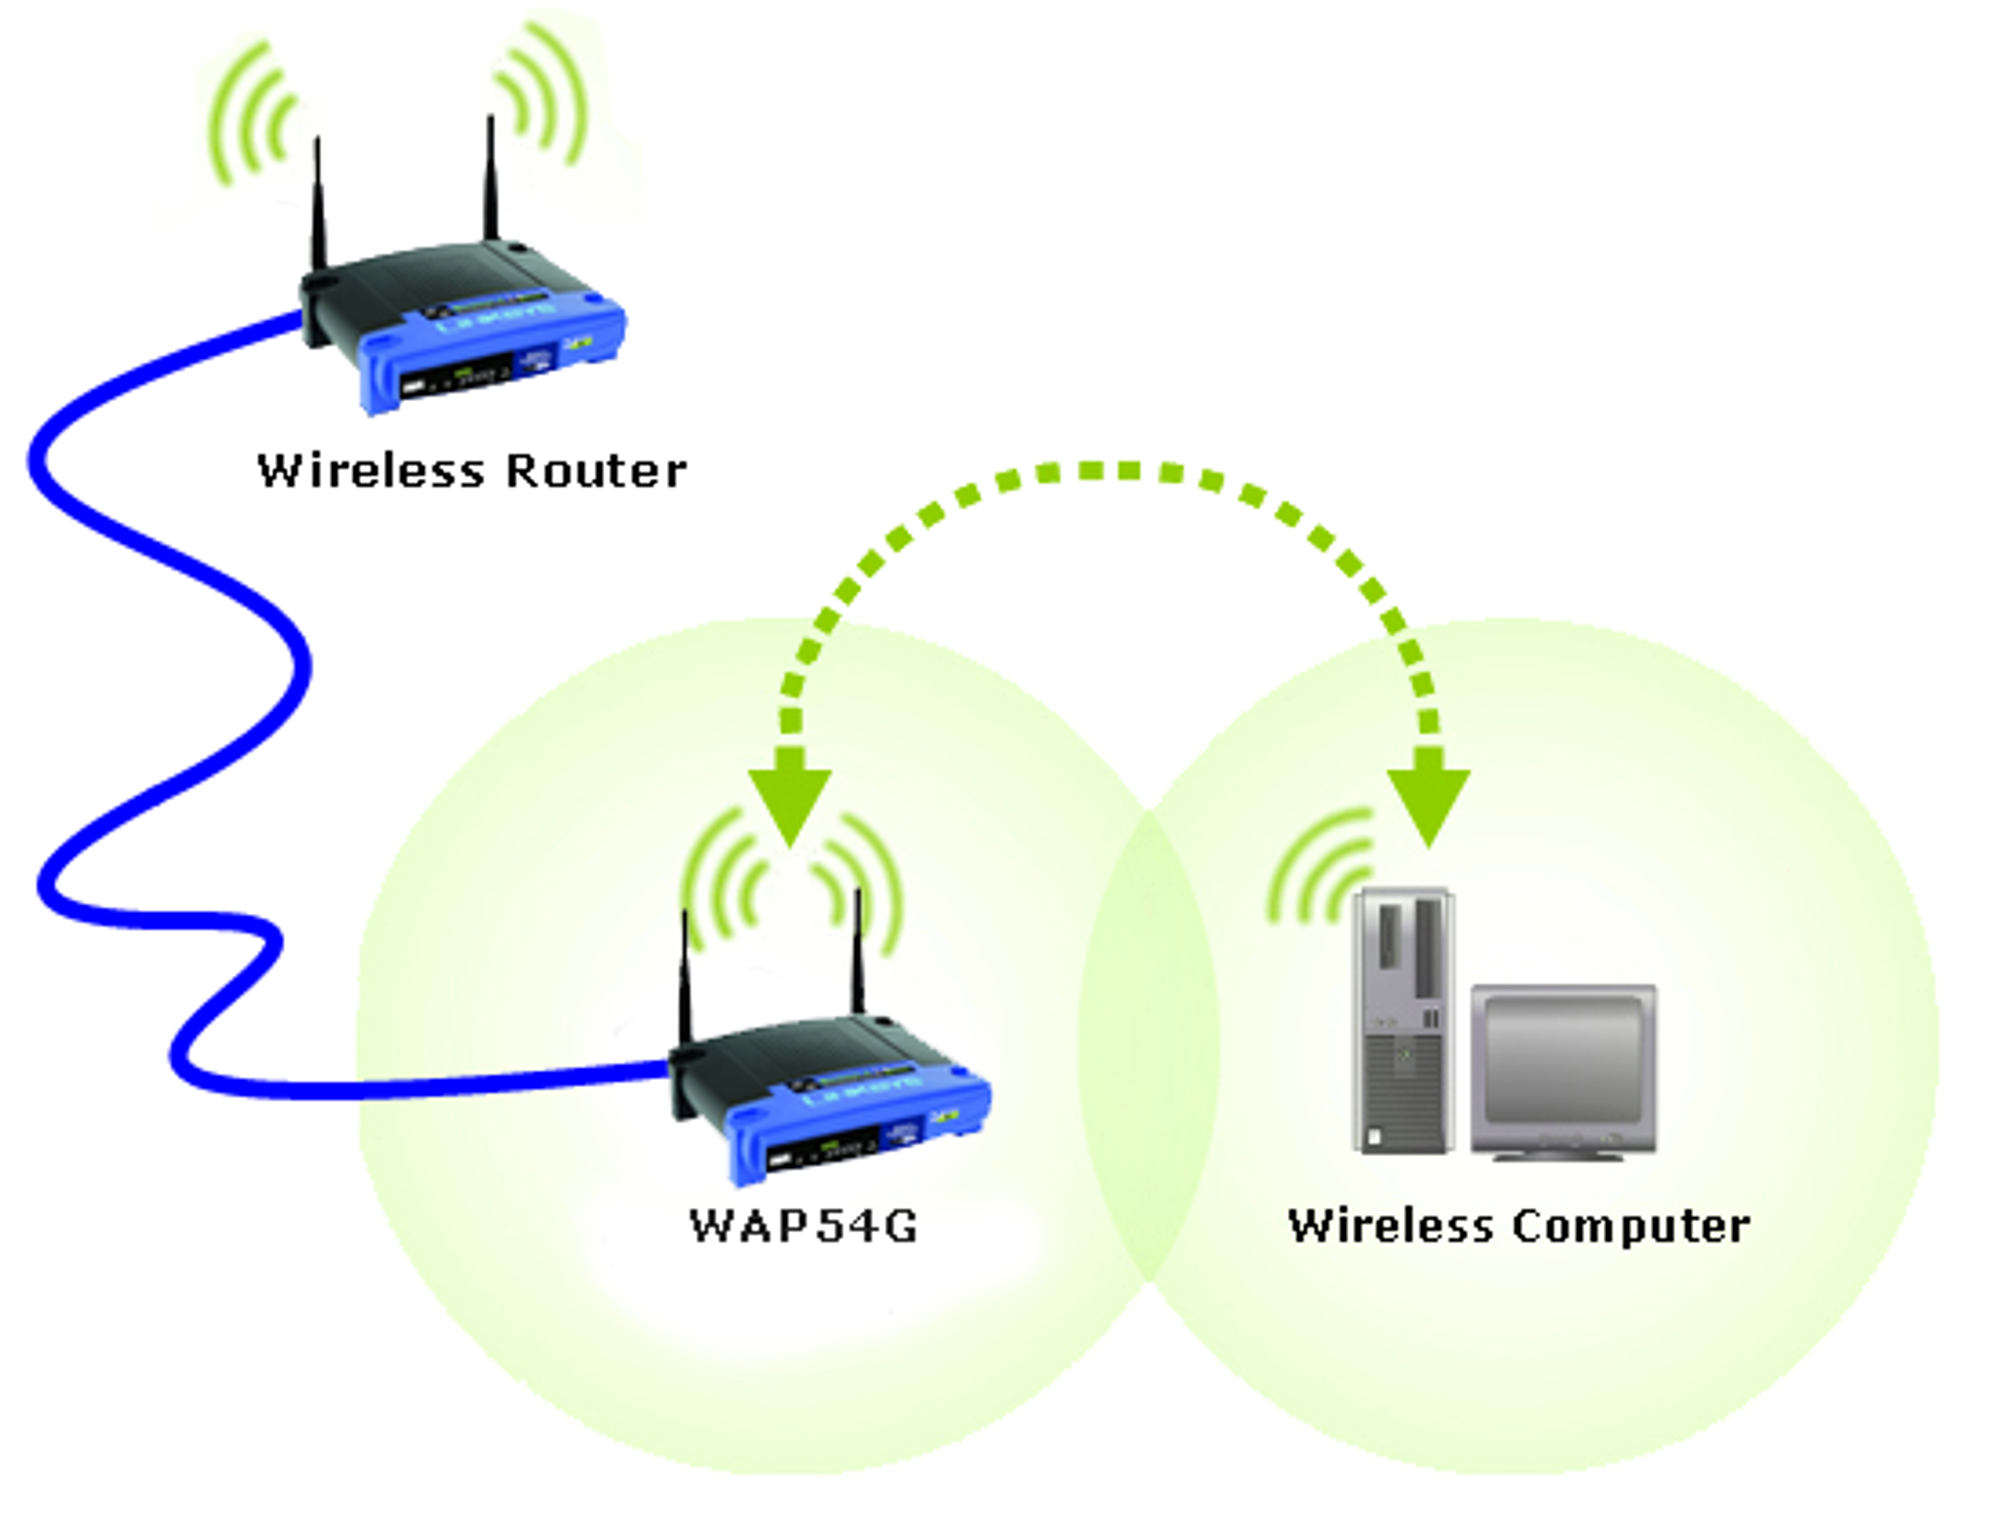 Найти точку доступа в библиотеке. Connect model pn741 роутер. Маршрутизатор и точка доступа. Wireless Router. Беспроводные точки доступа (Wireless access point).